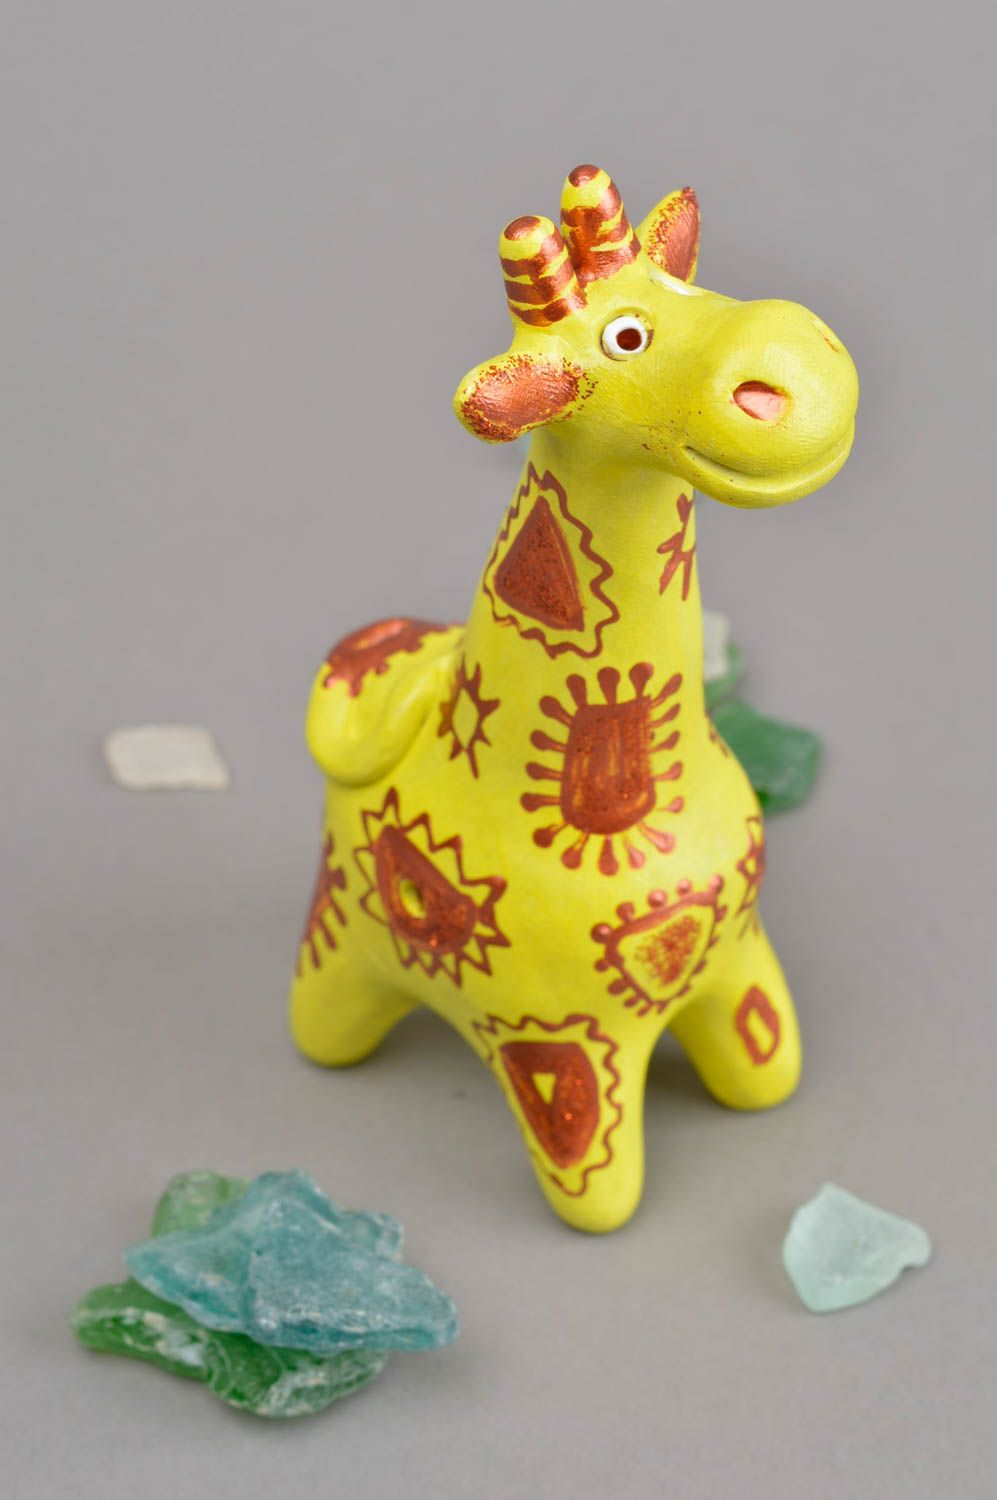 Handmade Lernspielzeug für Kind Keramik Figur Giraffe Musikinstrument für Kind foto 1